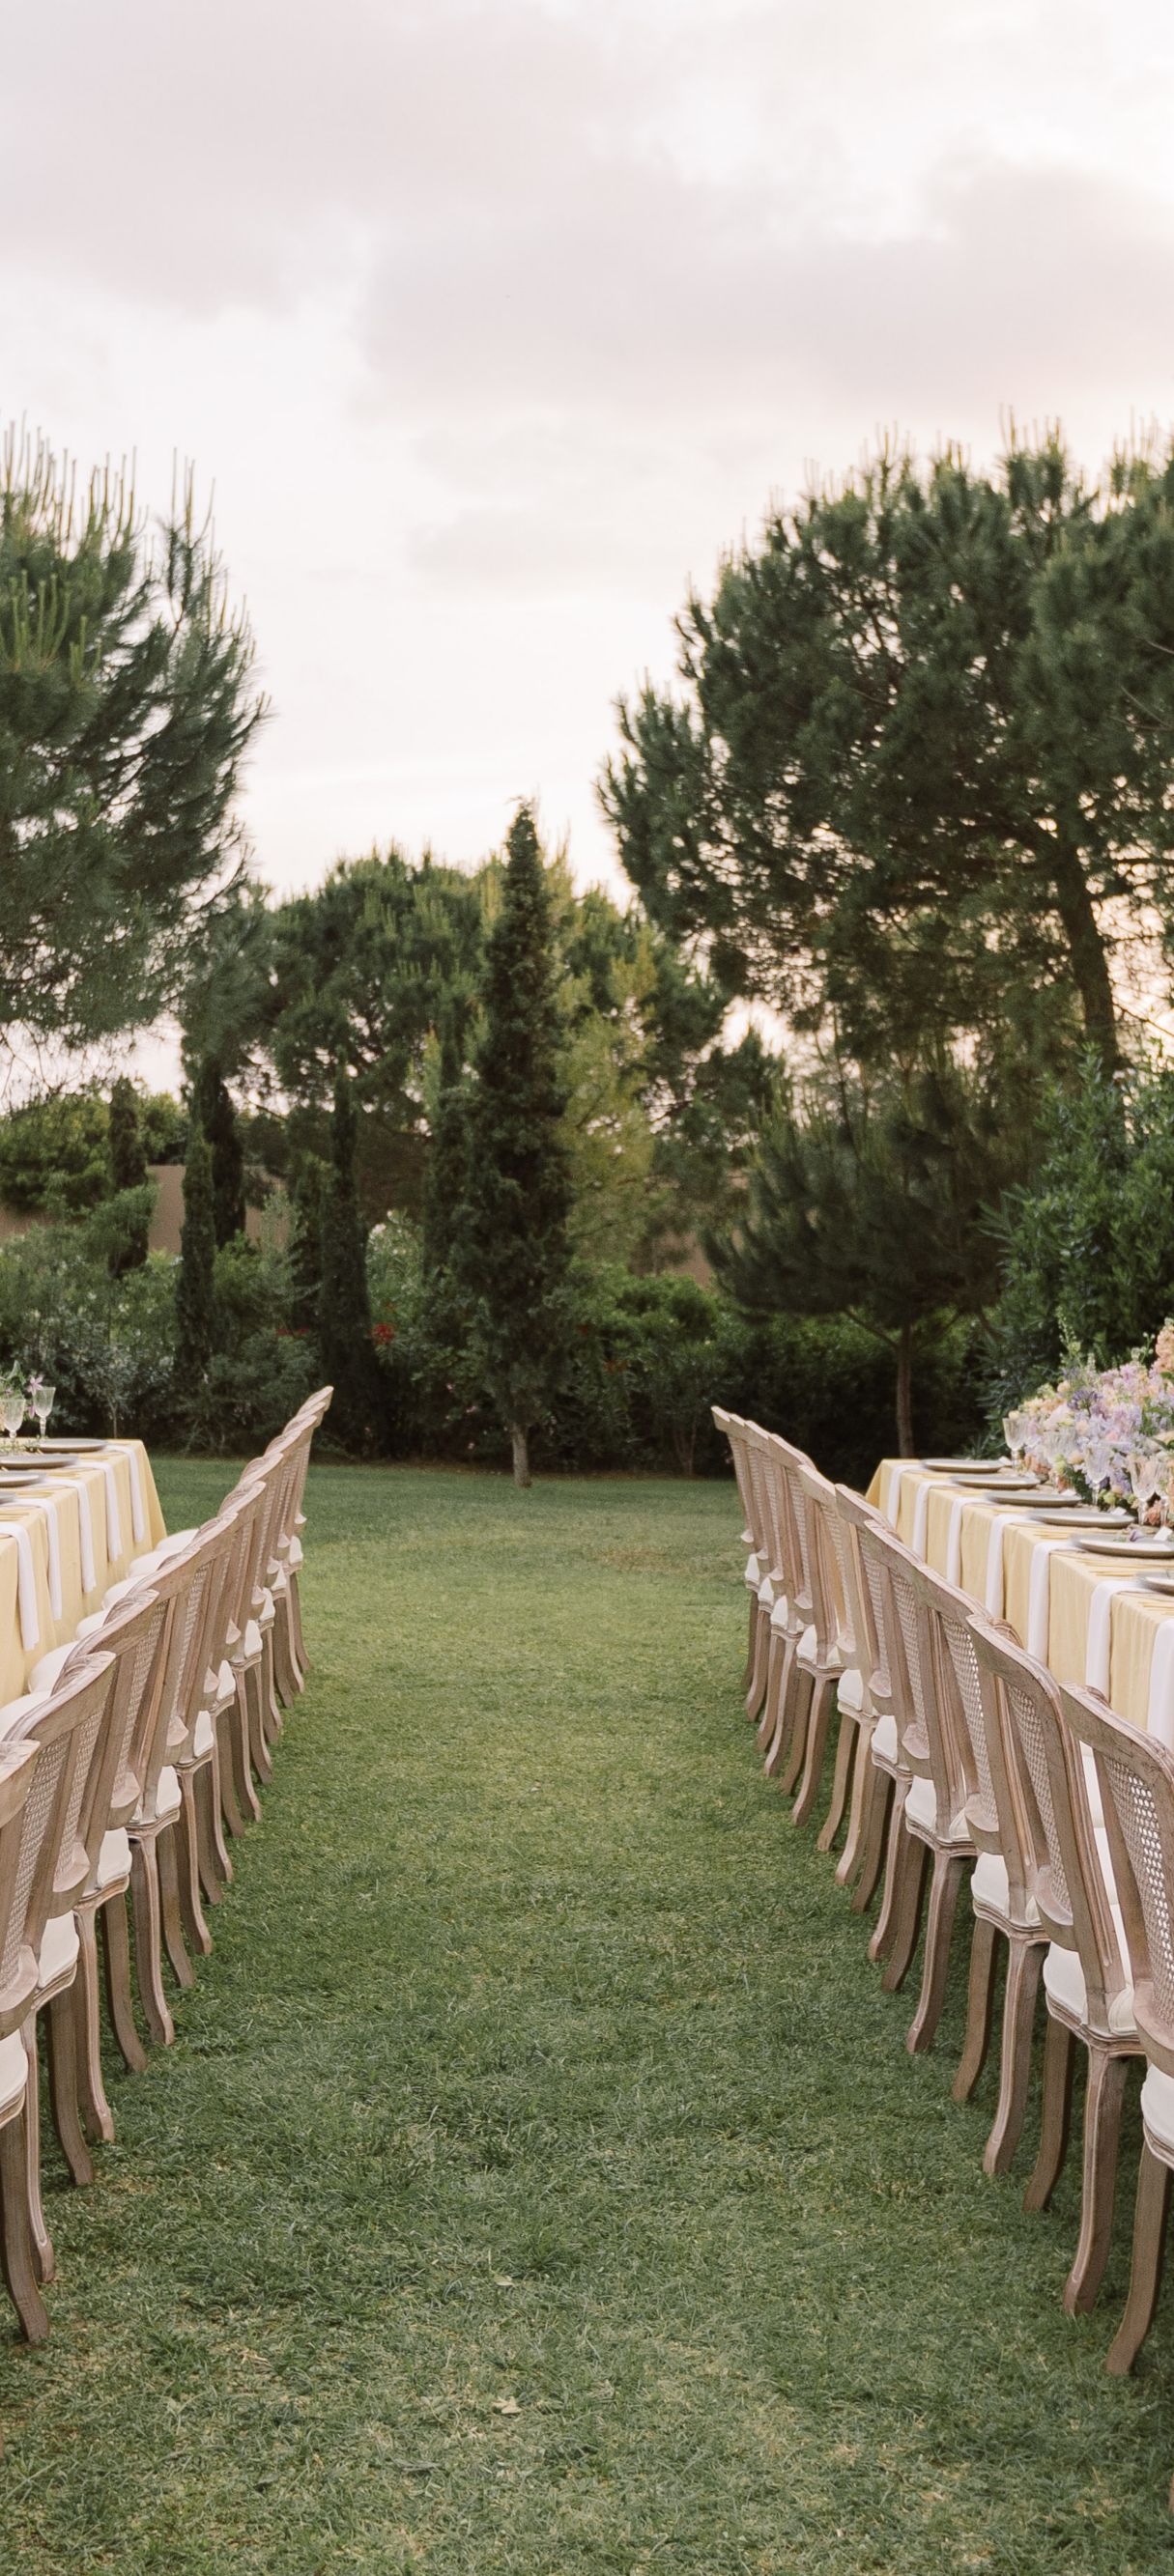 Outdoor wedding reception tables